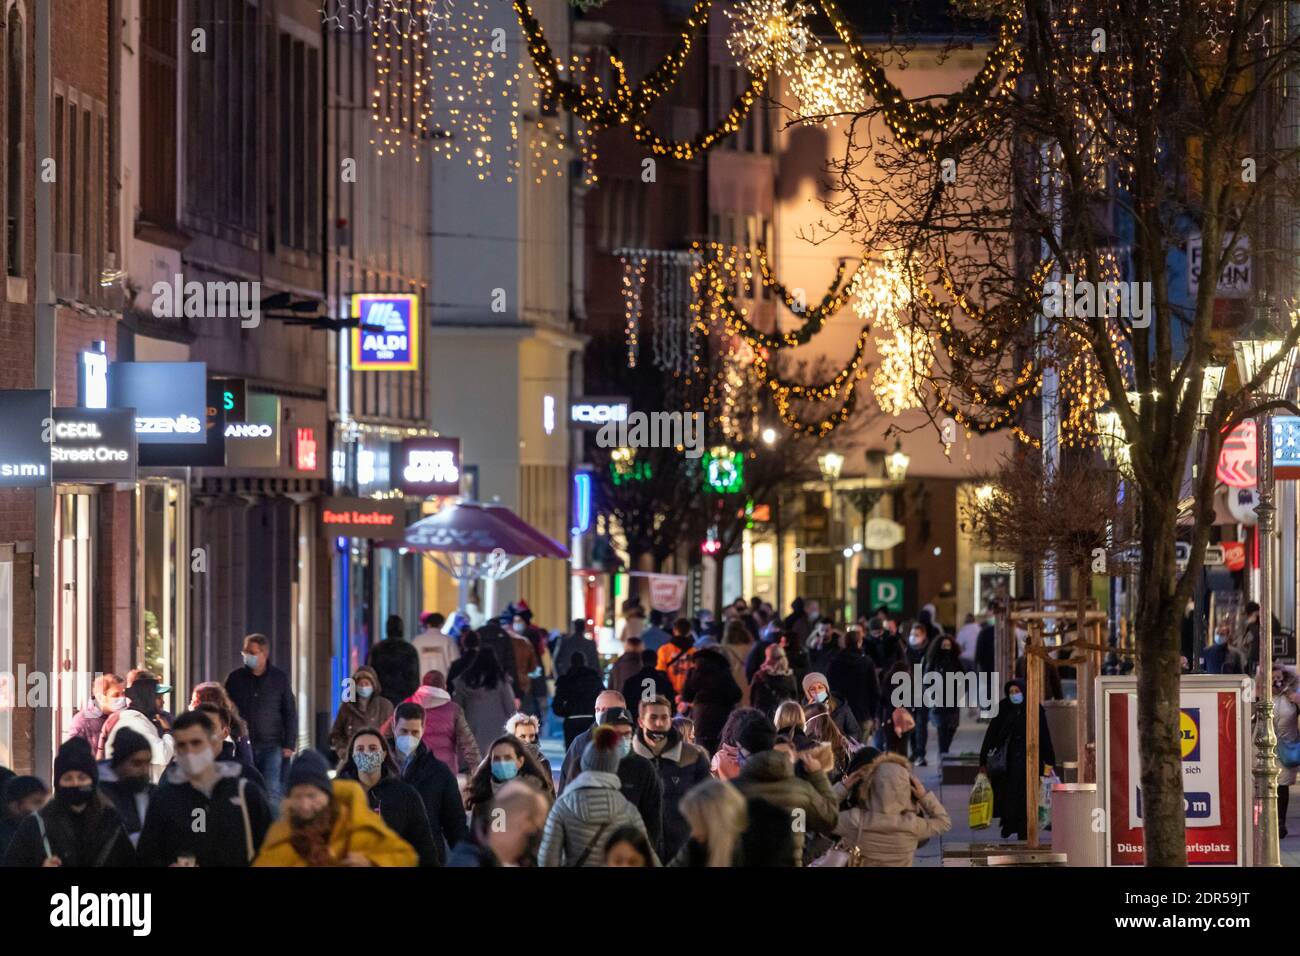 Adventswochenende in der Düsseldorfer Altstadt nach dem Lockdown in der Corona Krise – Fußgängerzone Flinger Straße Stock Photo